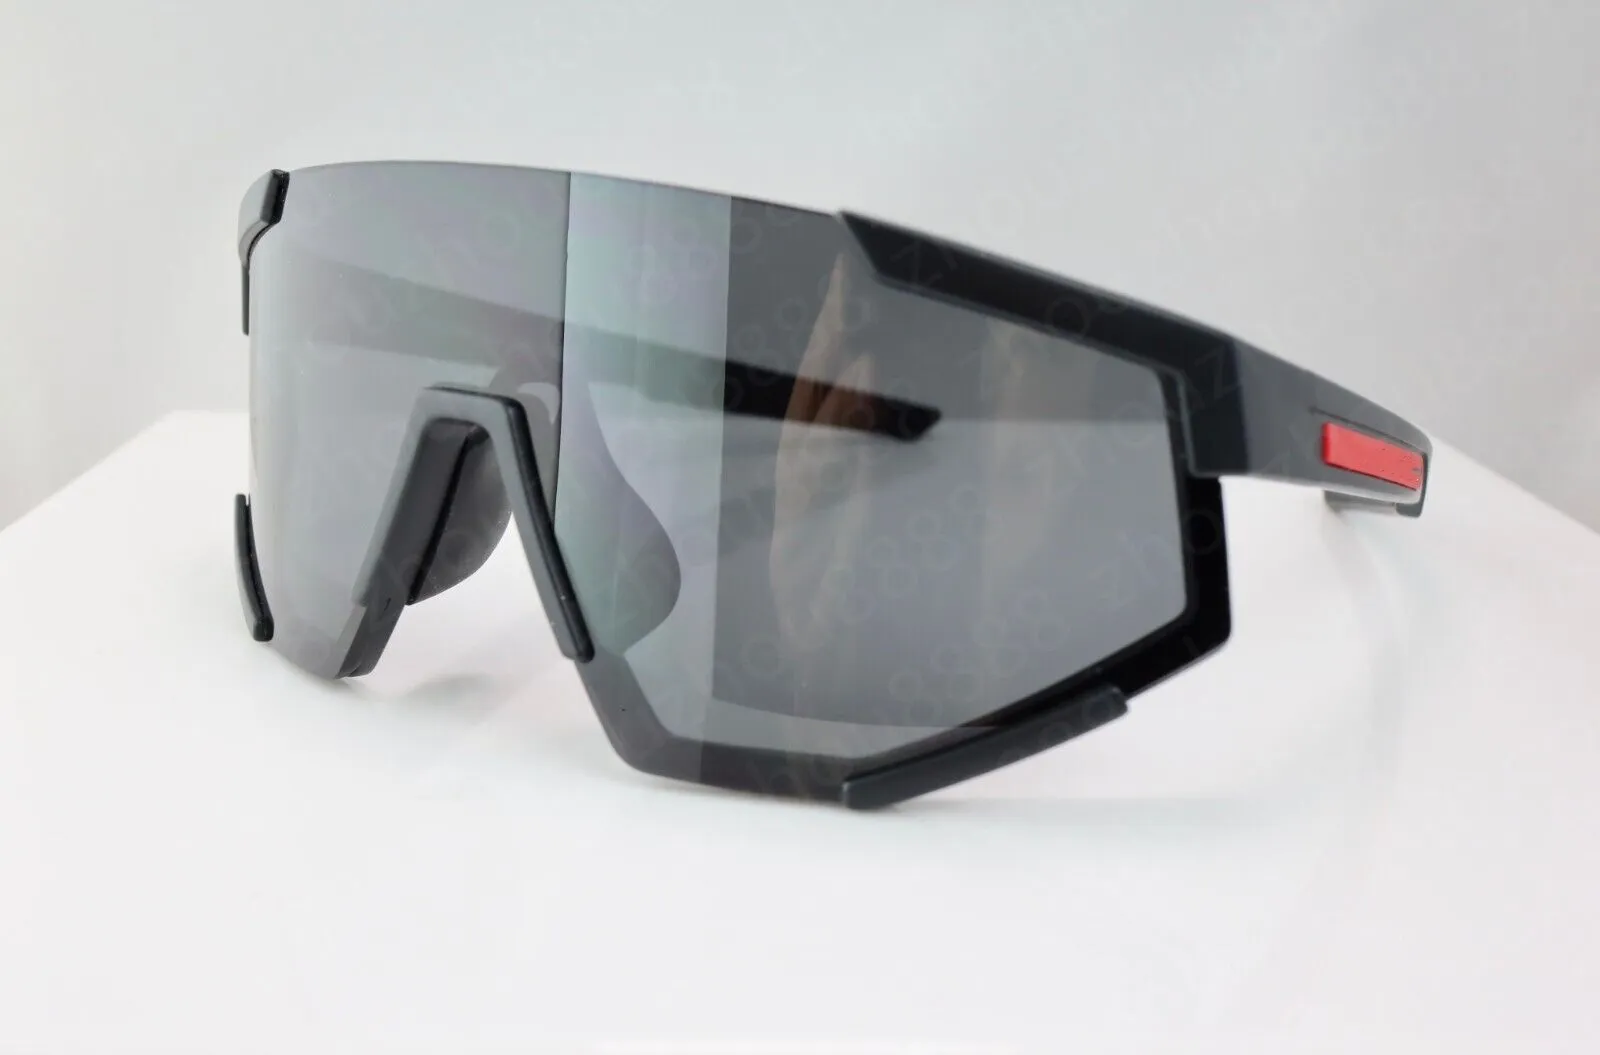 Дизайнерские солнцезащитные очки Shield Белый козырек с красной полосой Мужские женские велосипедные очки Мужская мода Поляризованные солнцезащитные очки Спорт на открытом воздухе Очки для бега с упаковкой